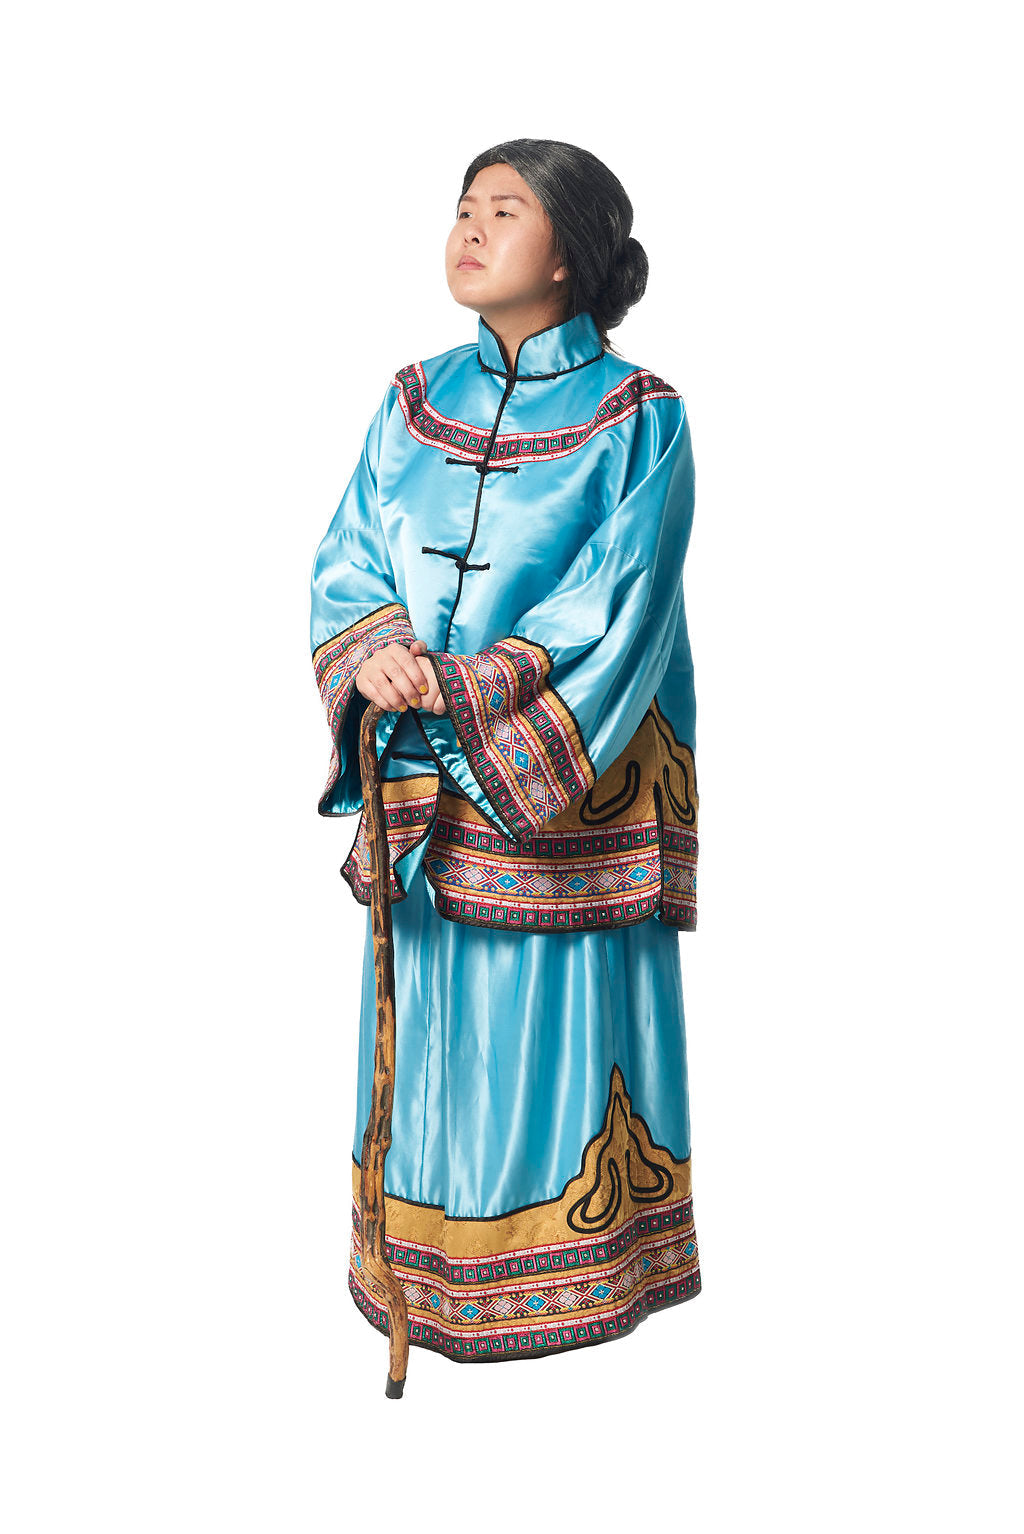 Wanita Manchu D01